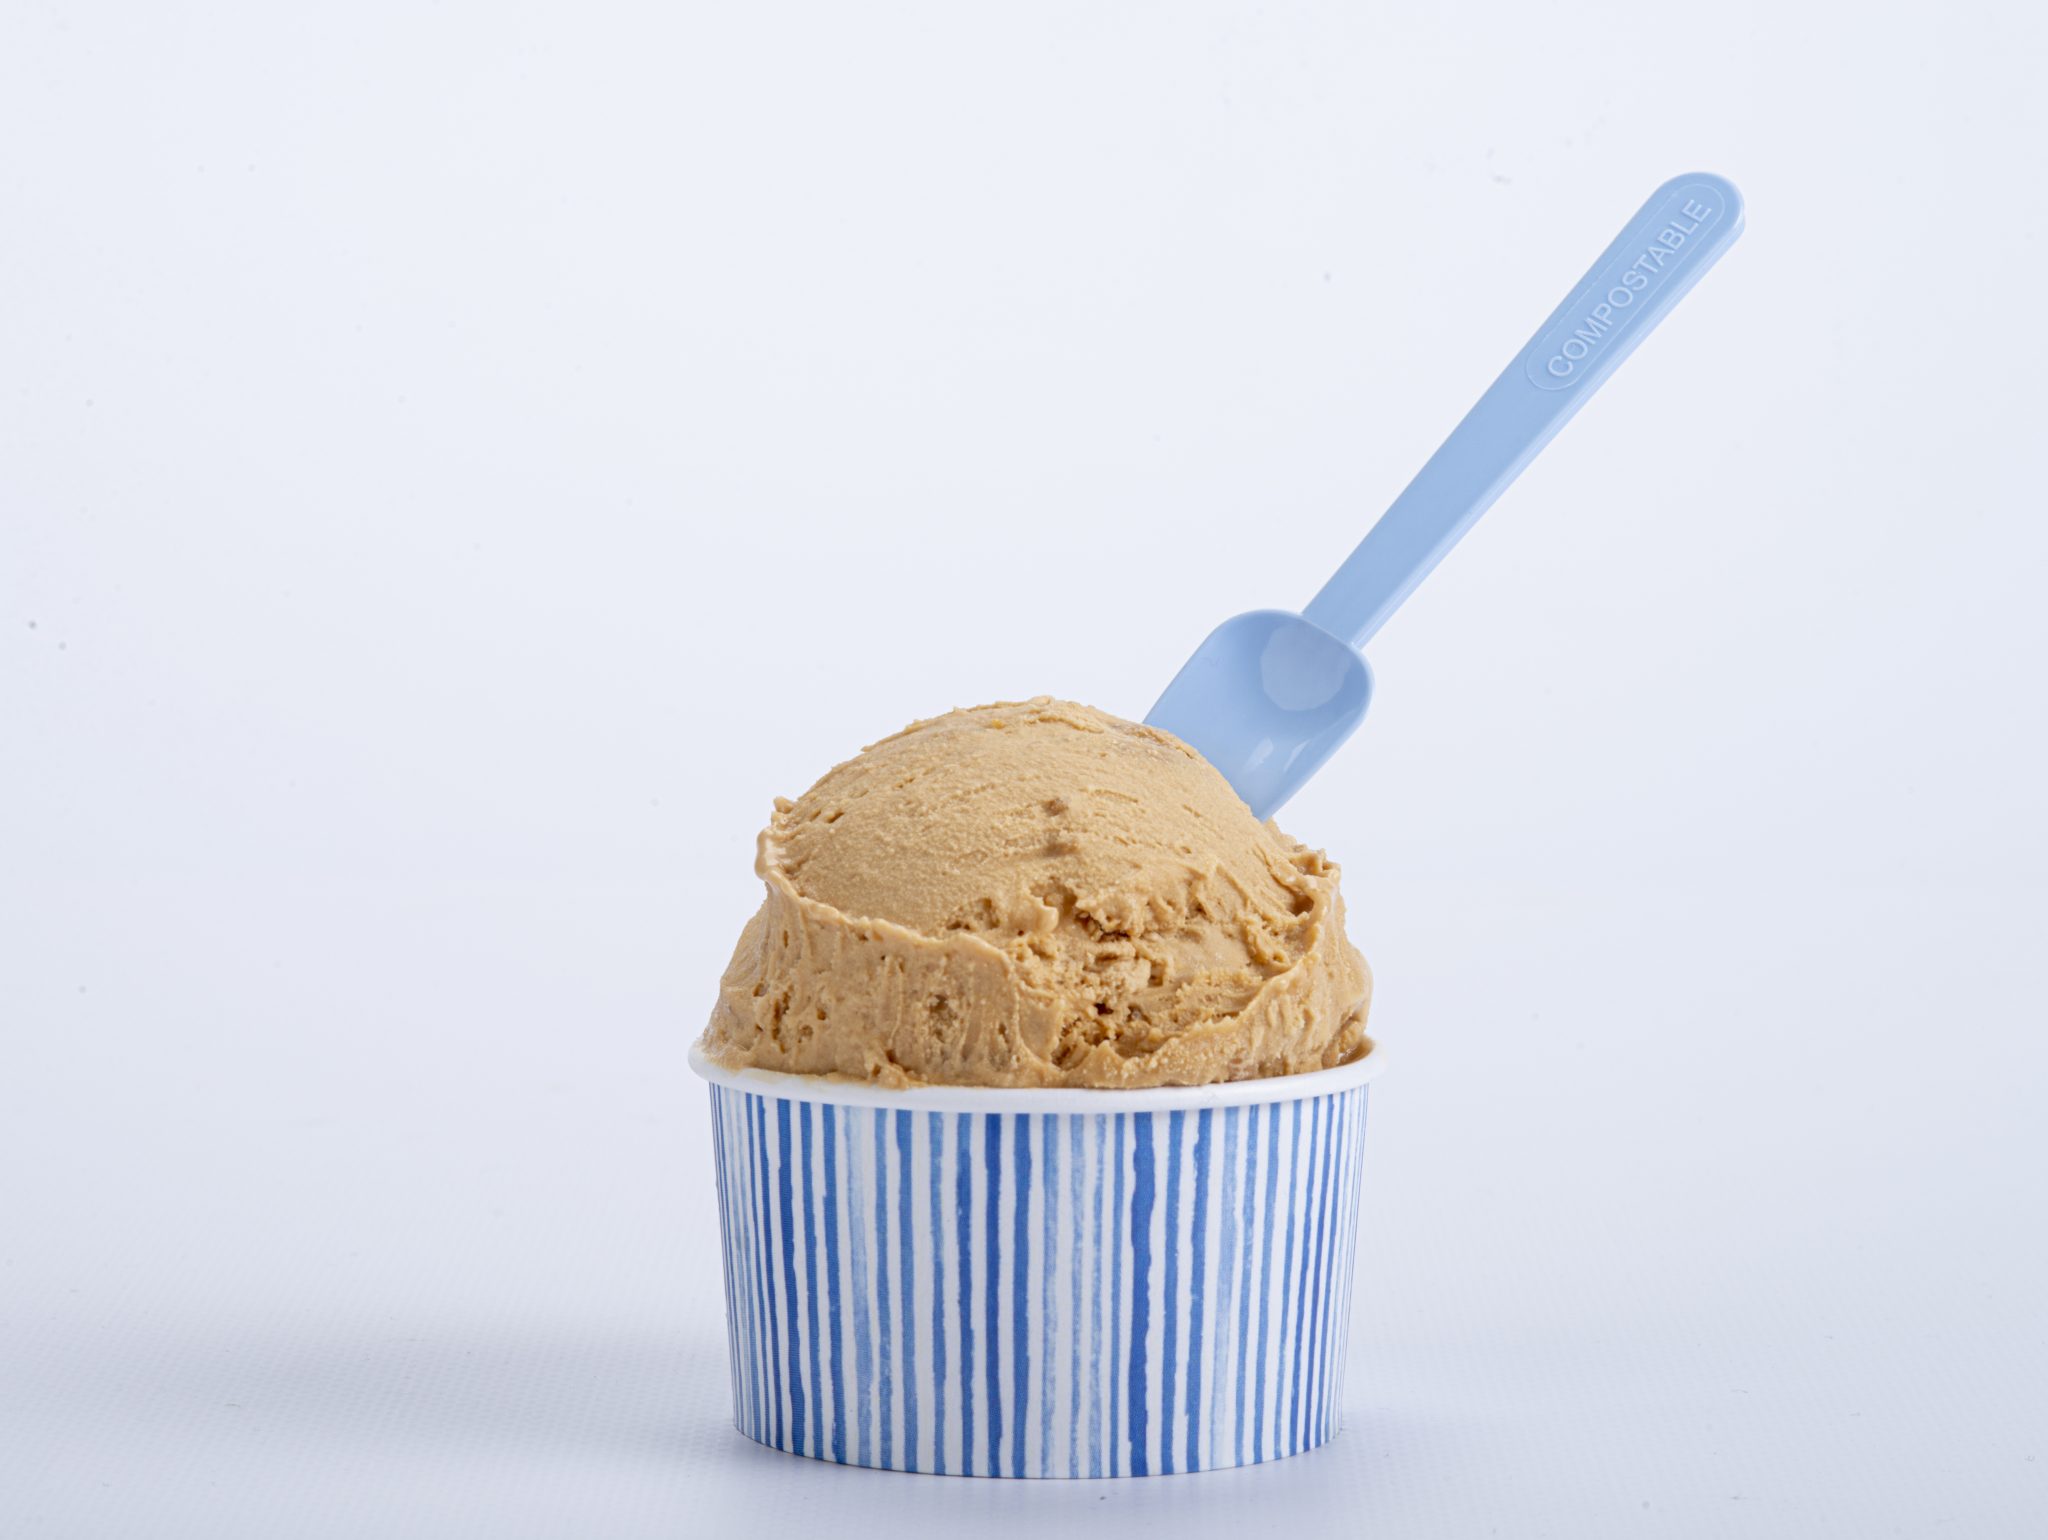 Cucharita compostable azul en helado de chocolate